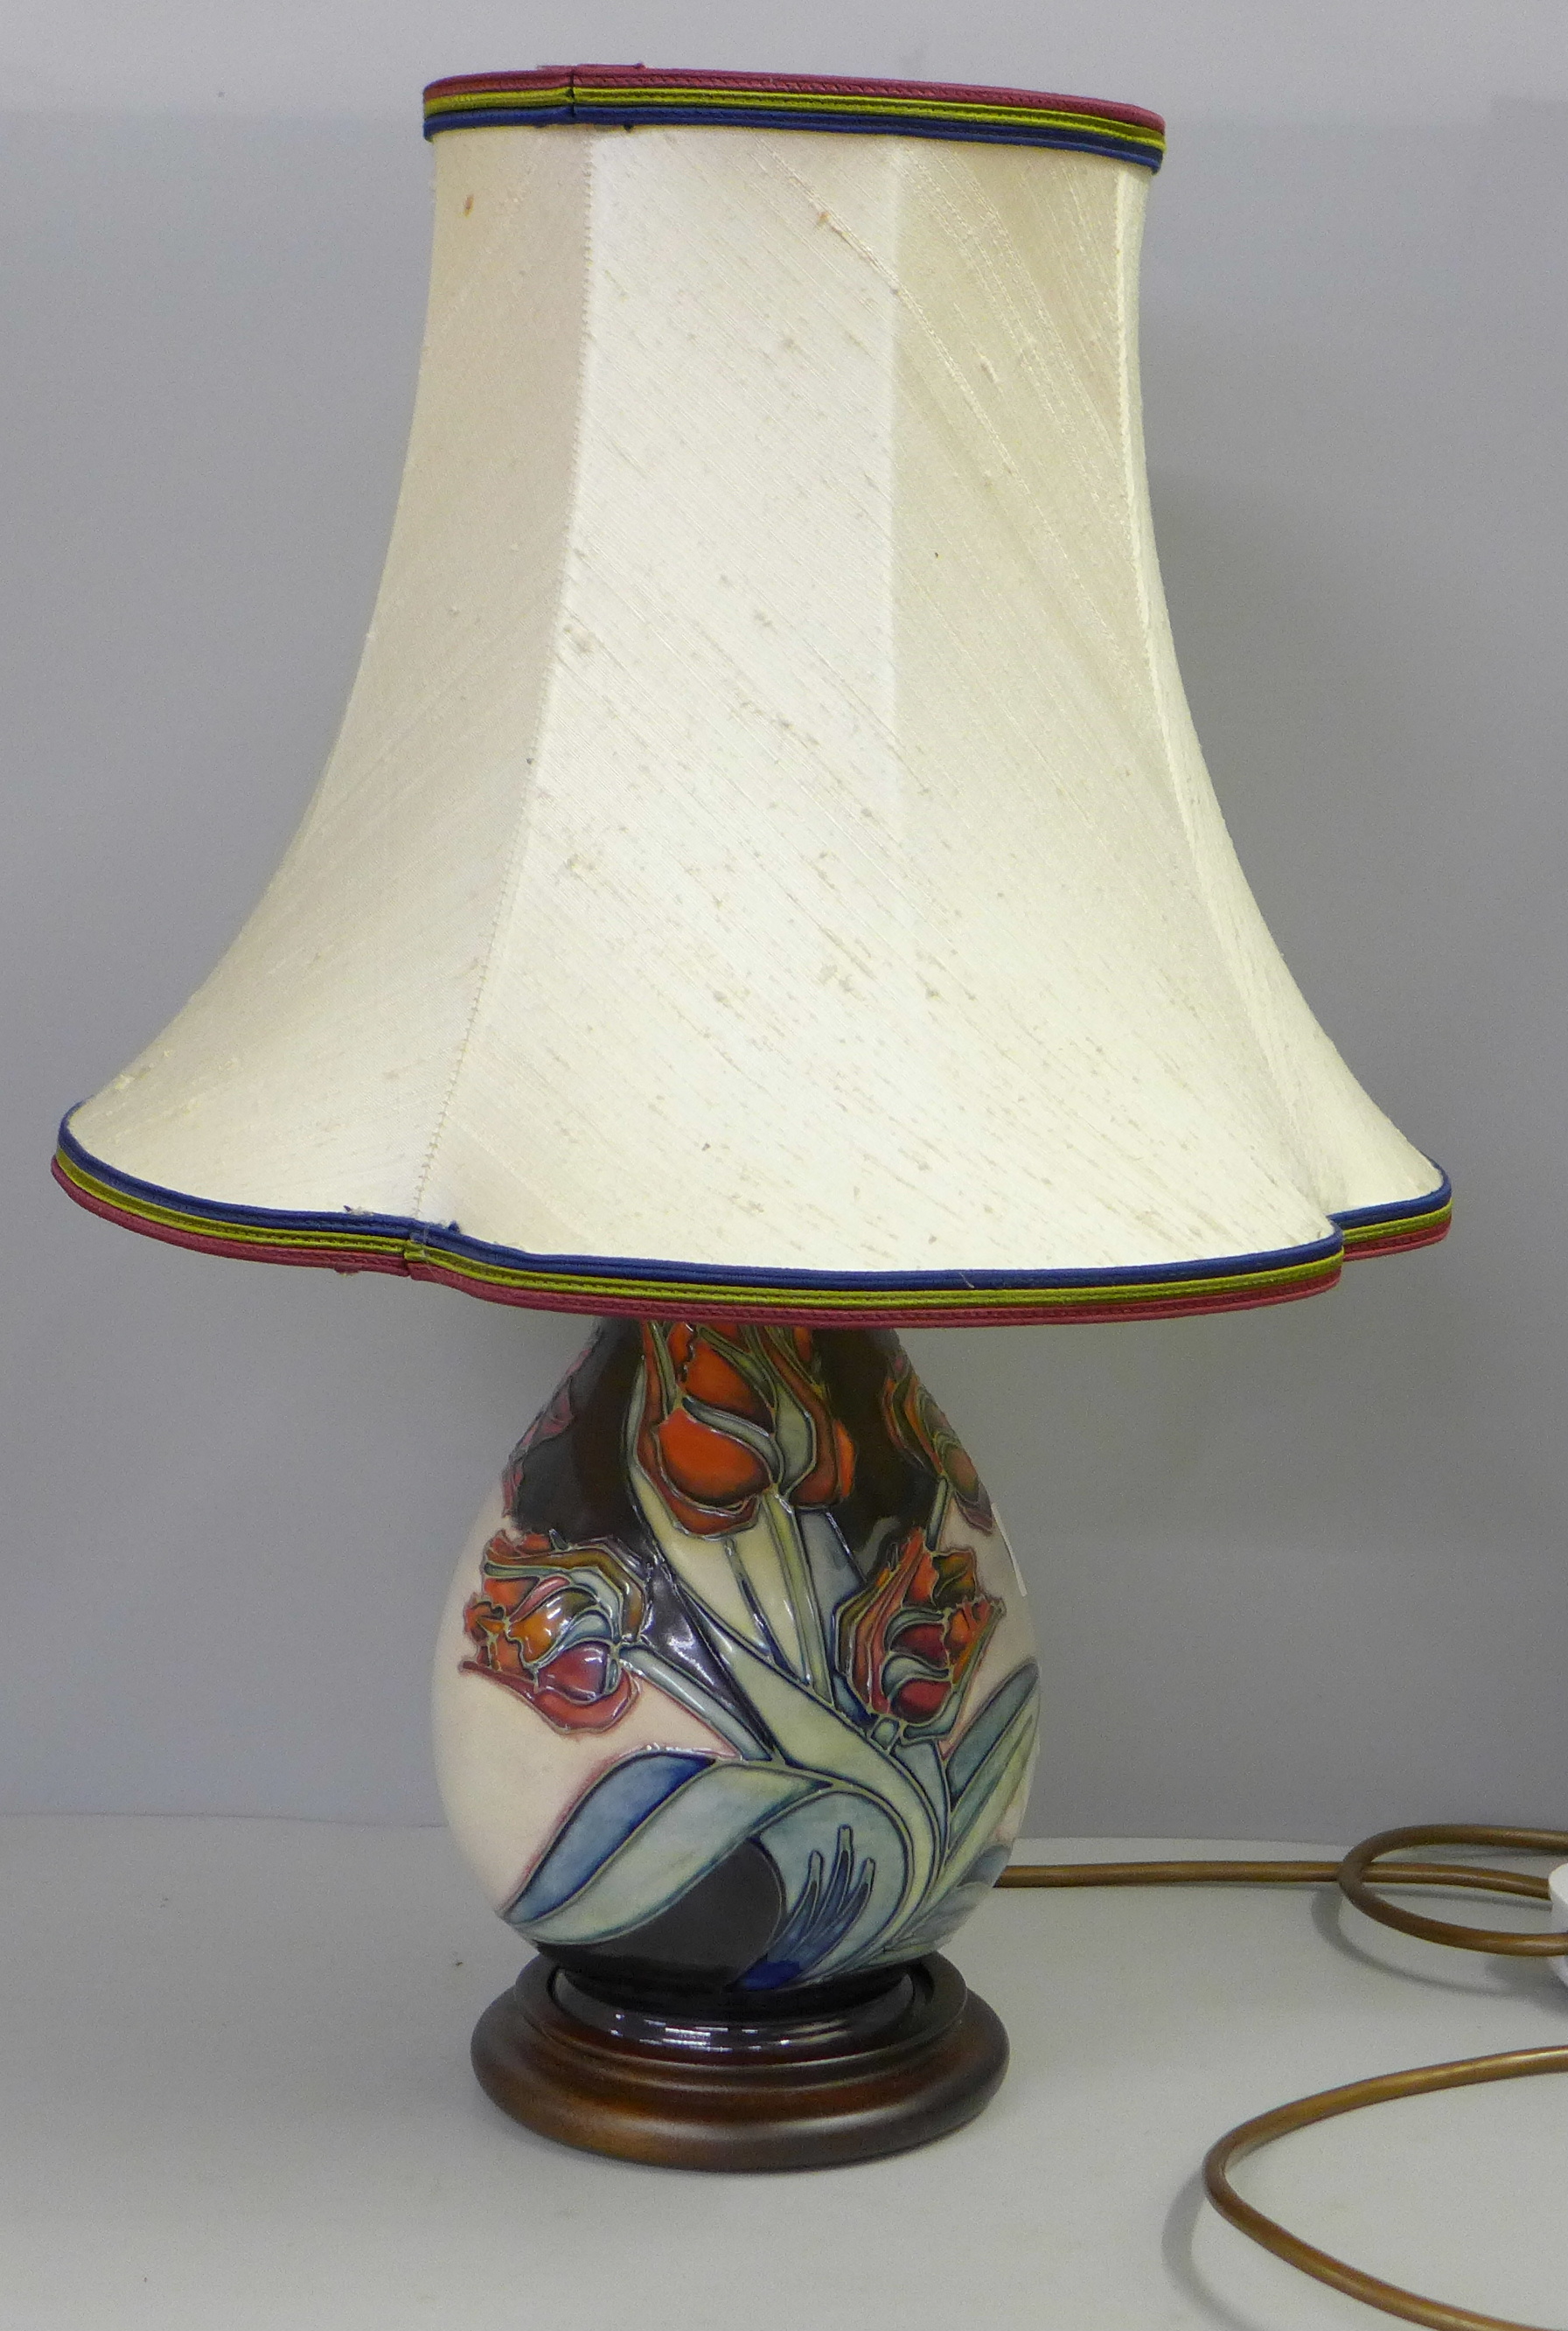 A Moorcroft table lamp base